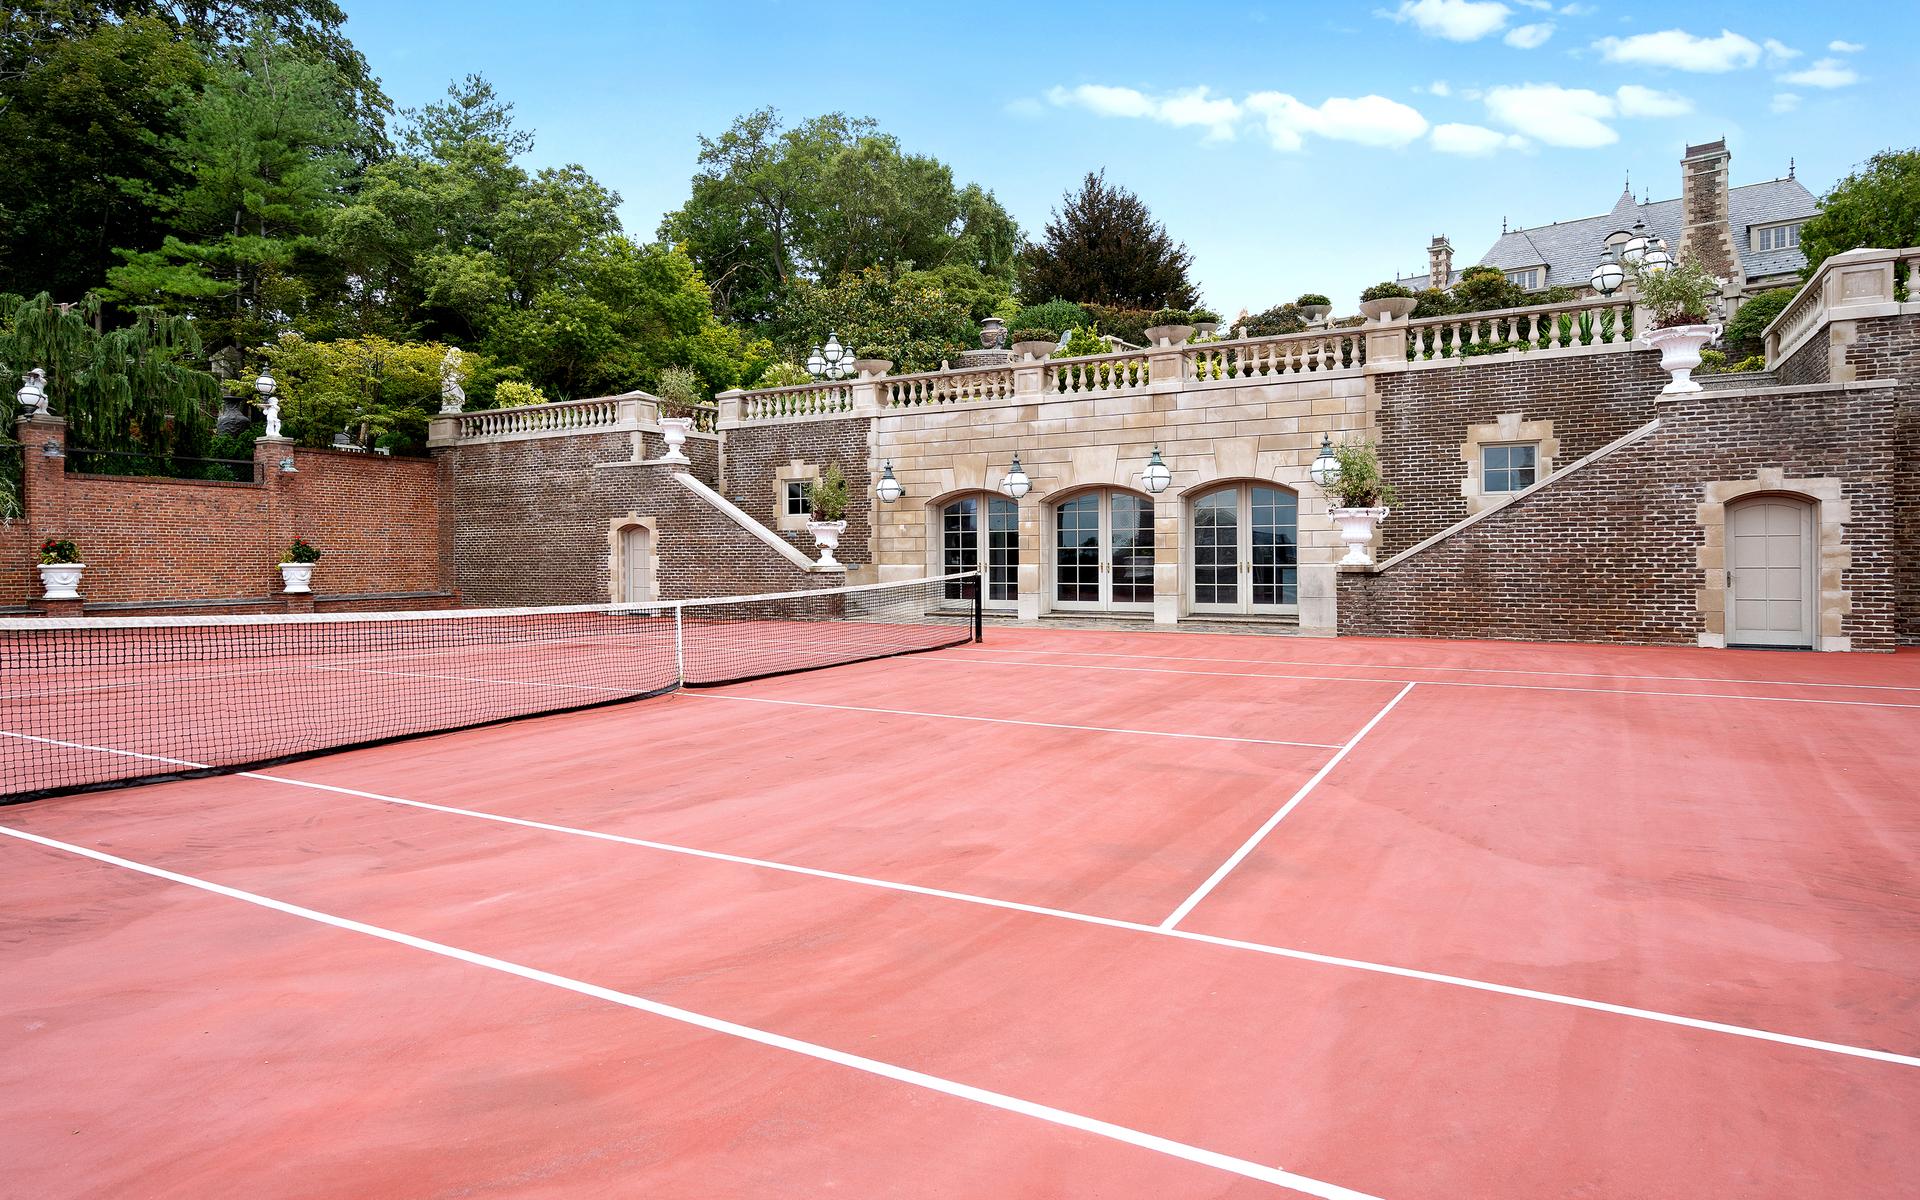 Fastigheten har ju en hel del att erbjuda i form av aktiviteter, som bland annat en tennisplan. 